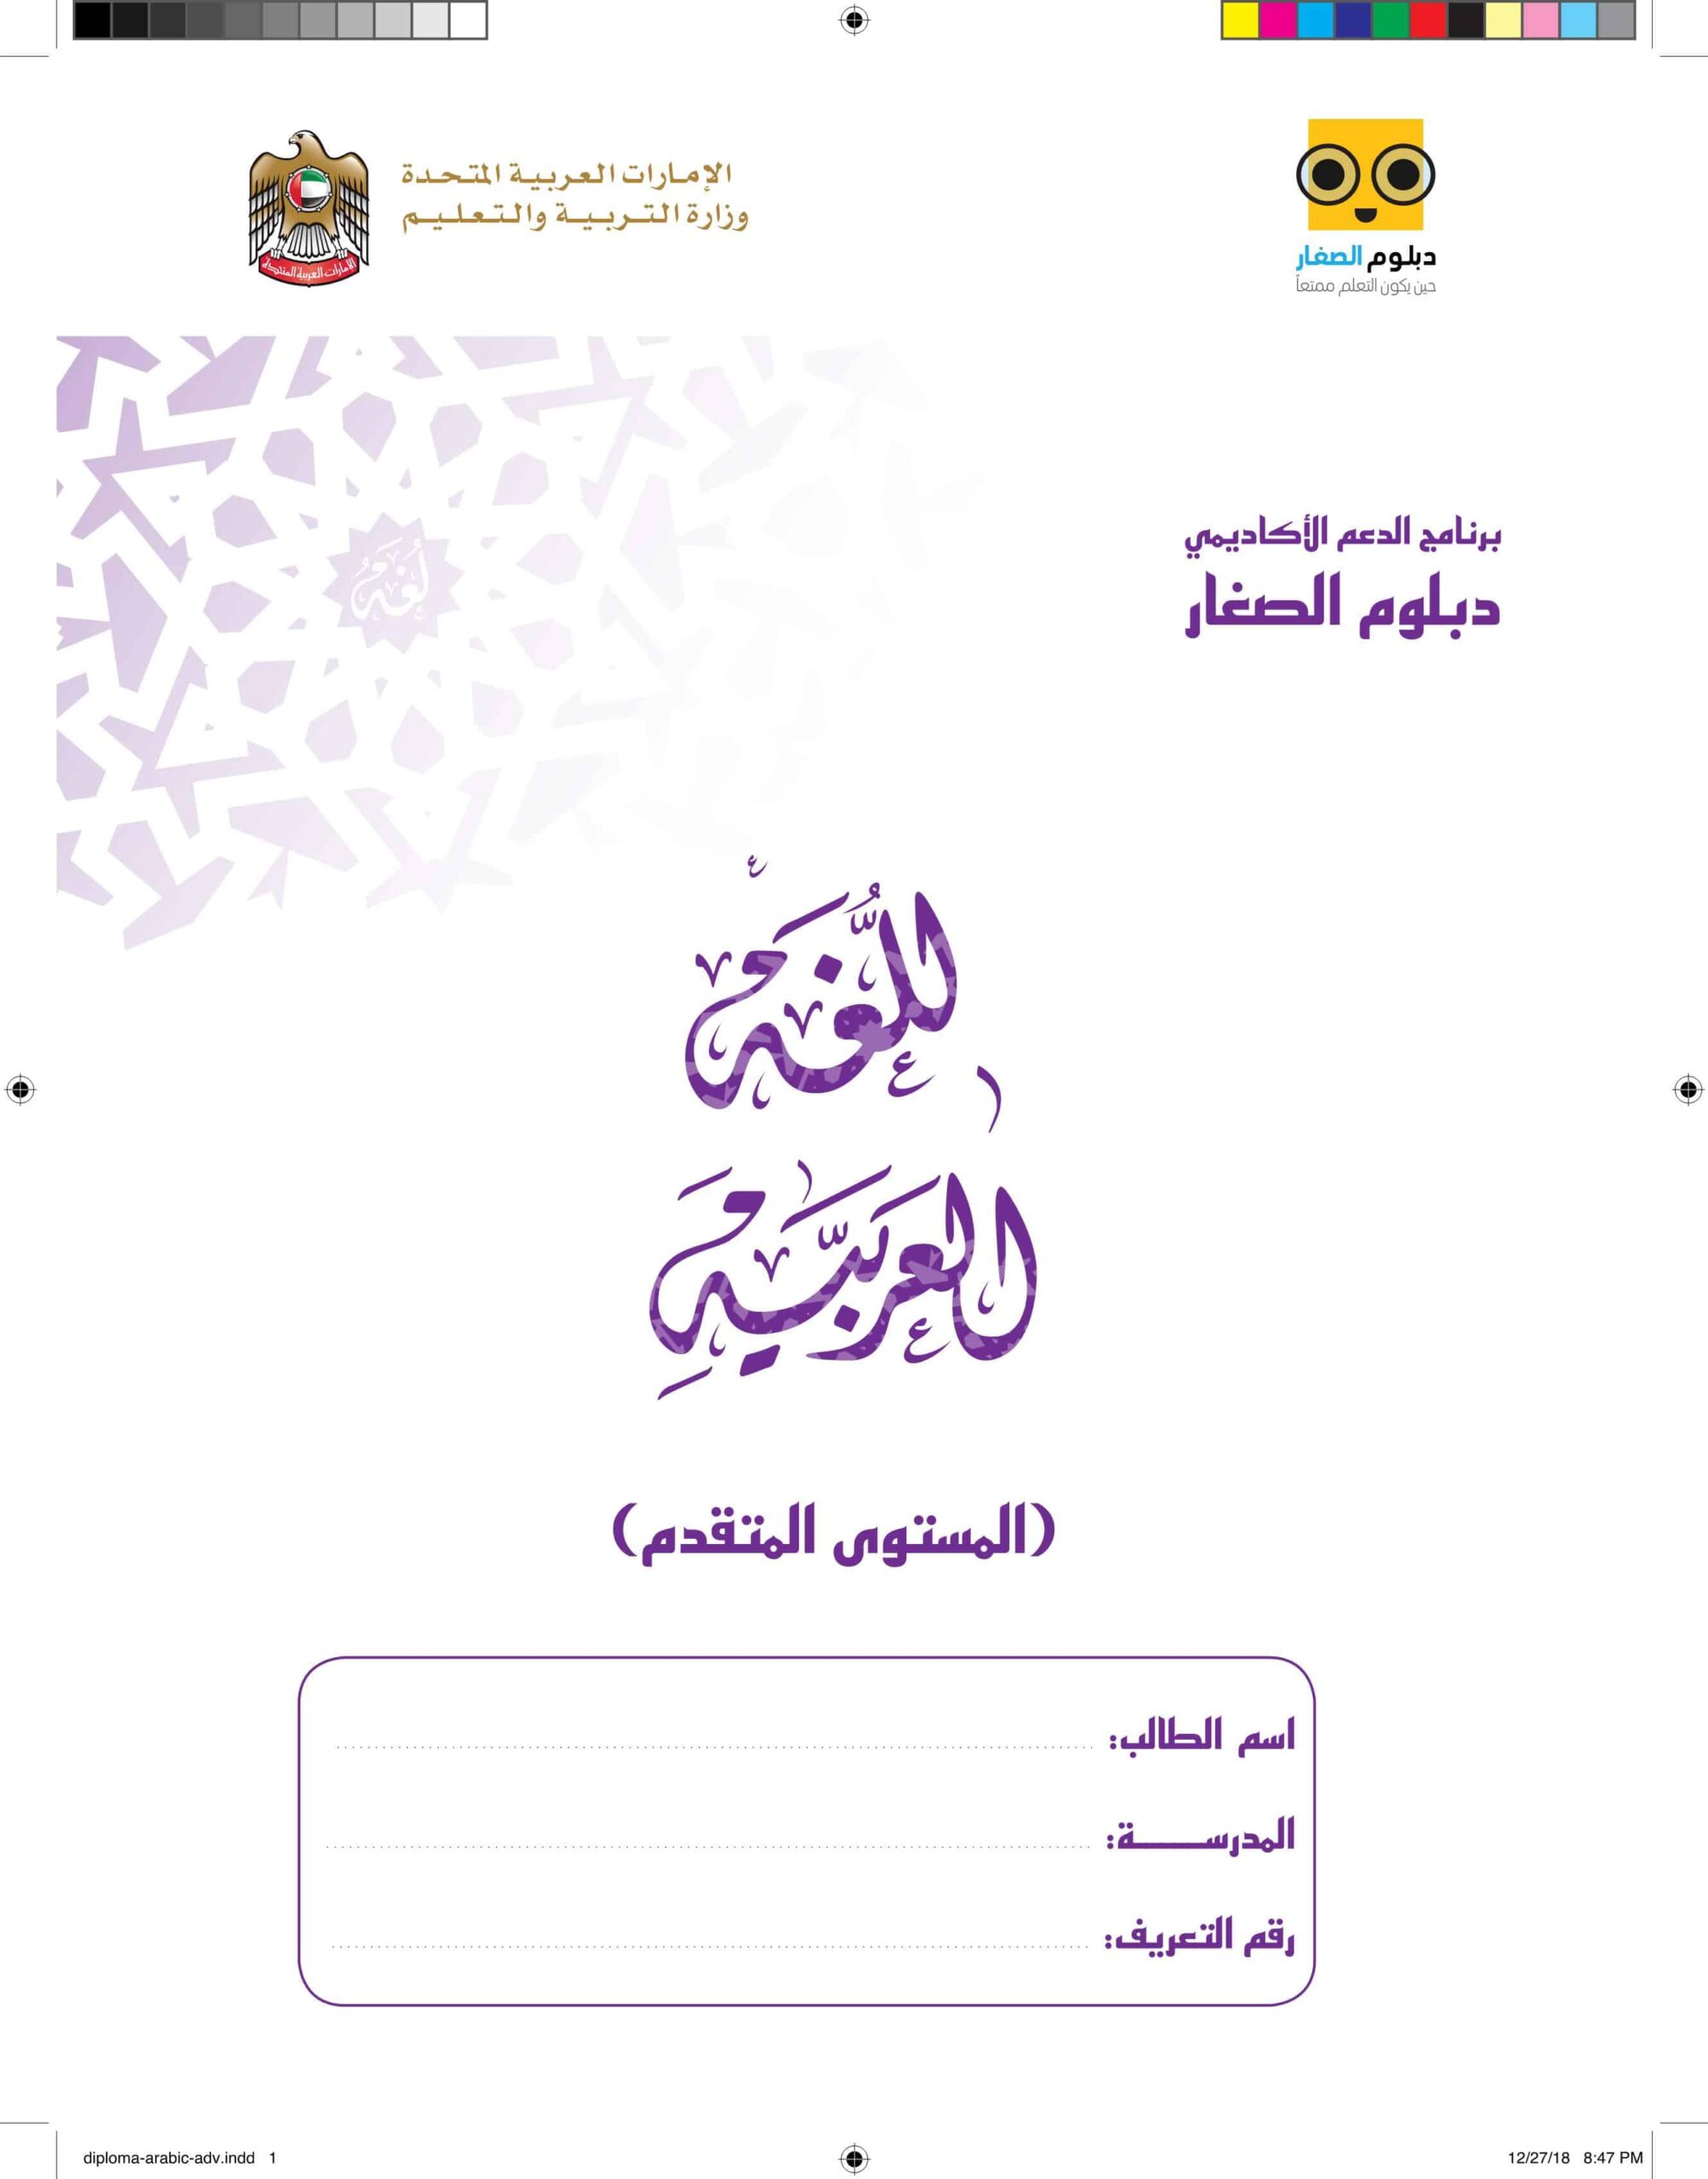 دبلوم الصغار المستوى المتقدم اللغة العربية الصف الثالث